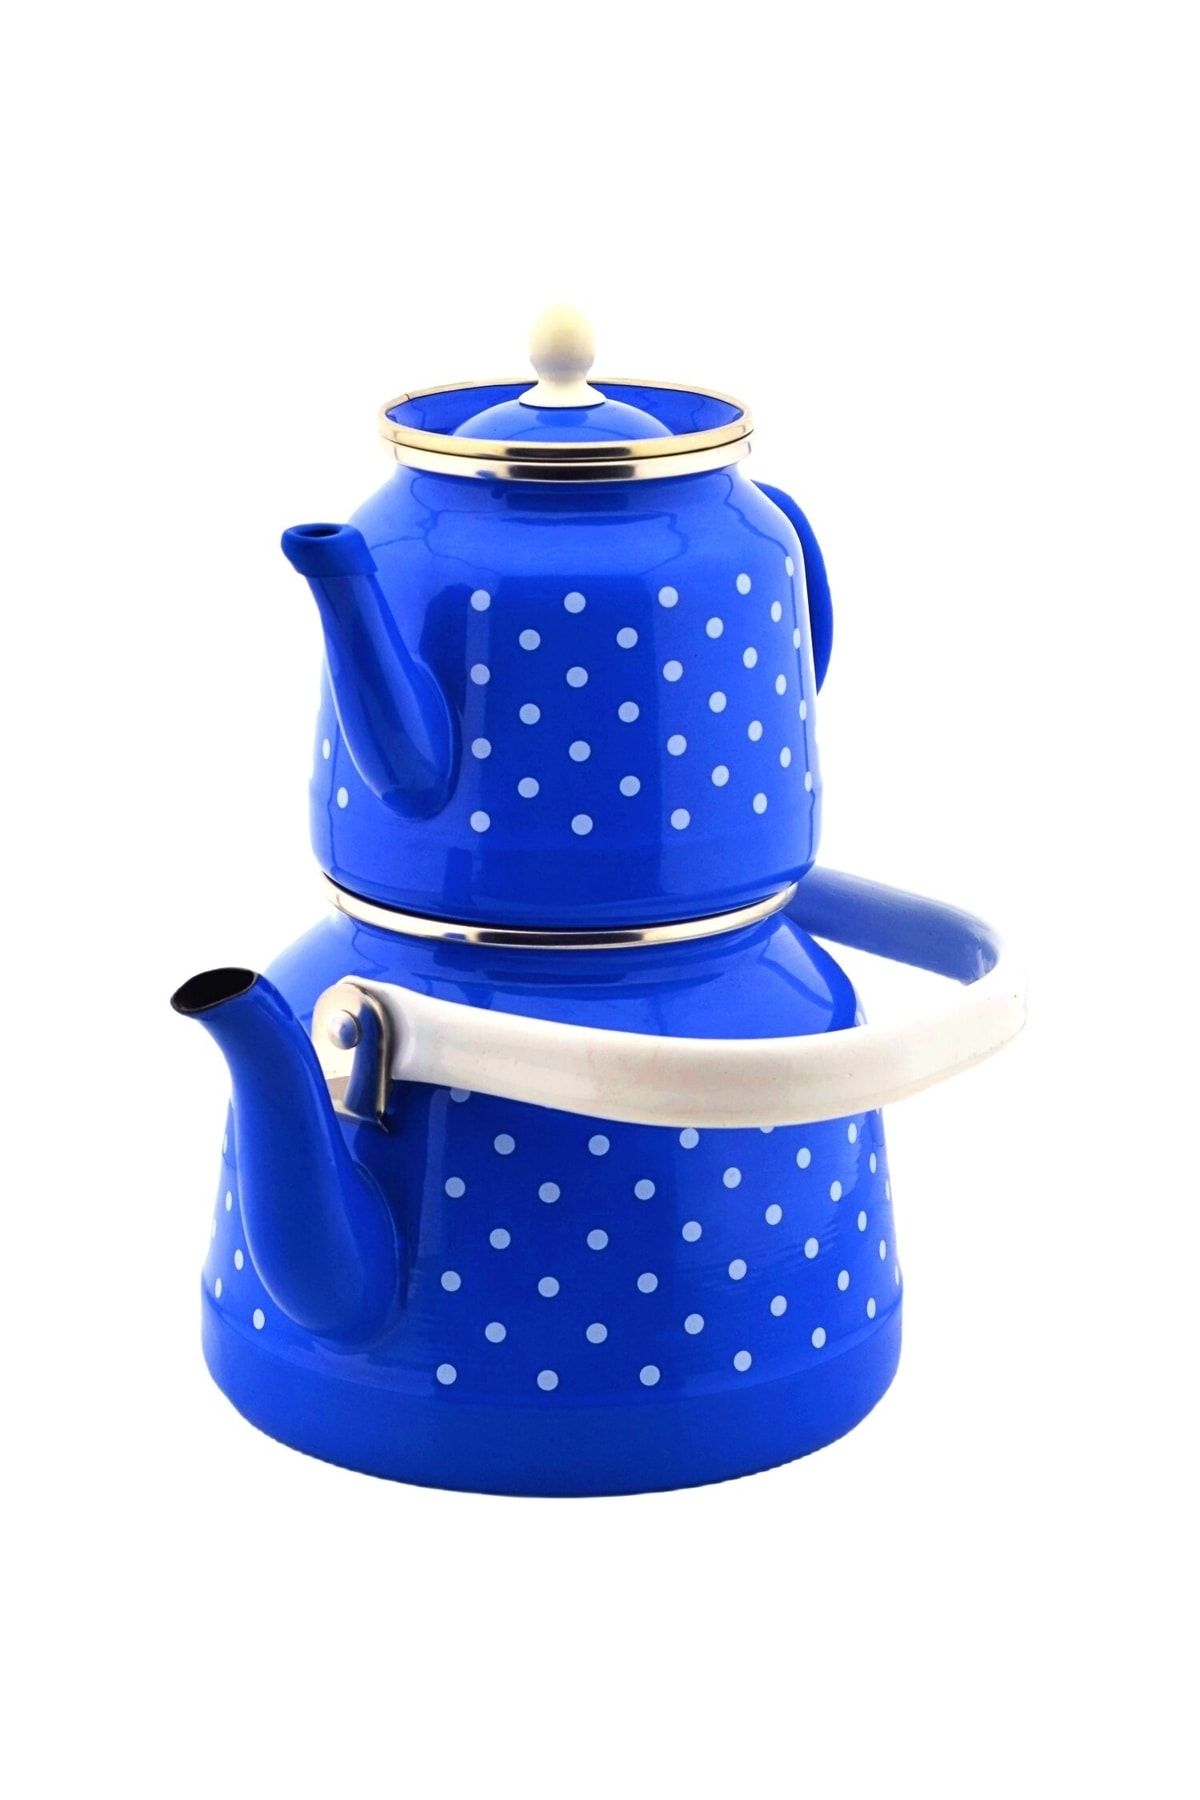 qussine Emaye Çaydanlık Takımı Lacivert Puantiyeli Çaydanlık Takımı 3.5 Litre Üstten Tutmalı